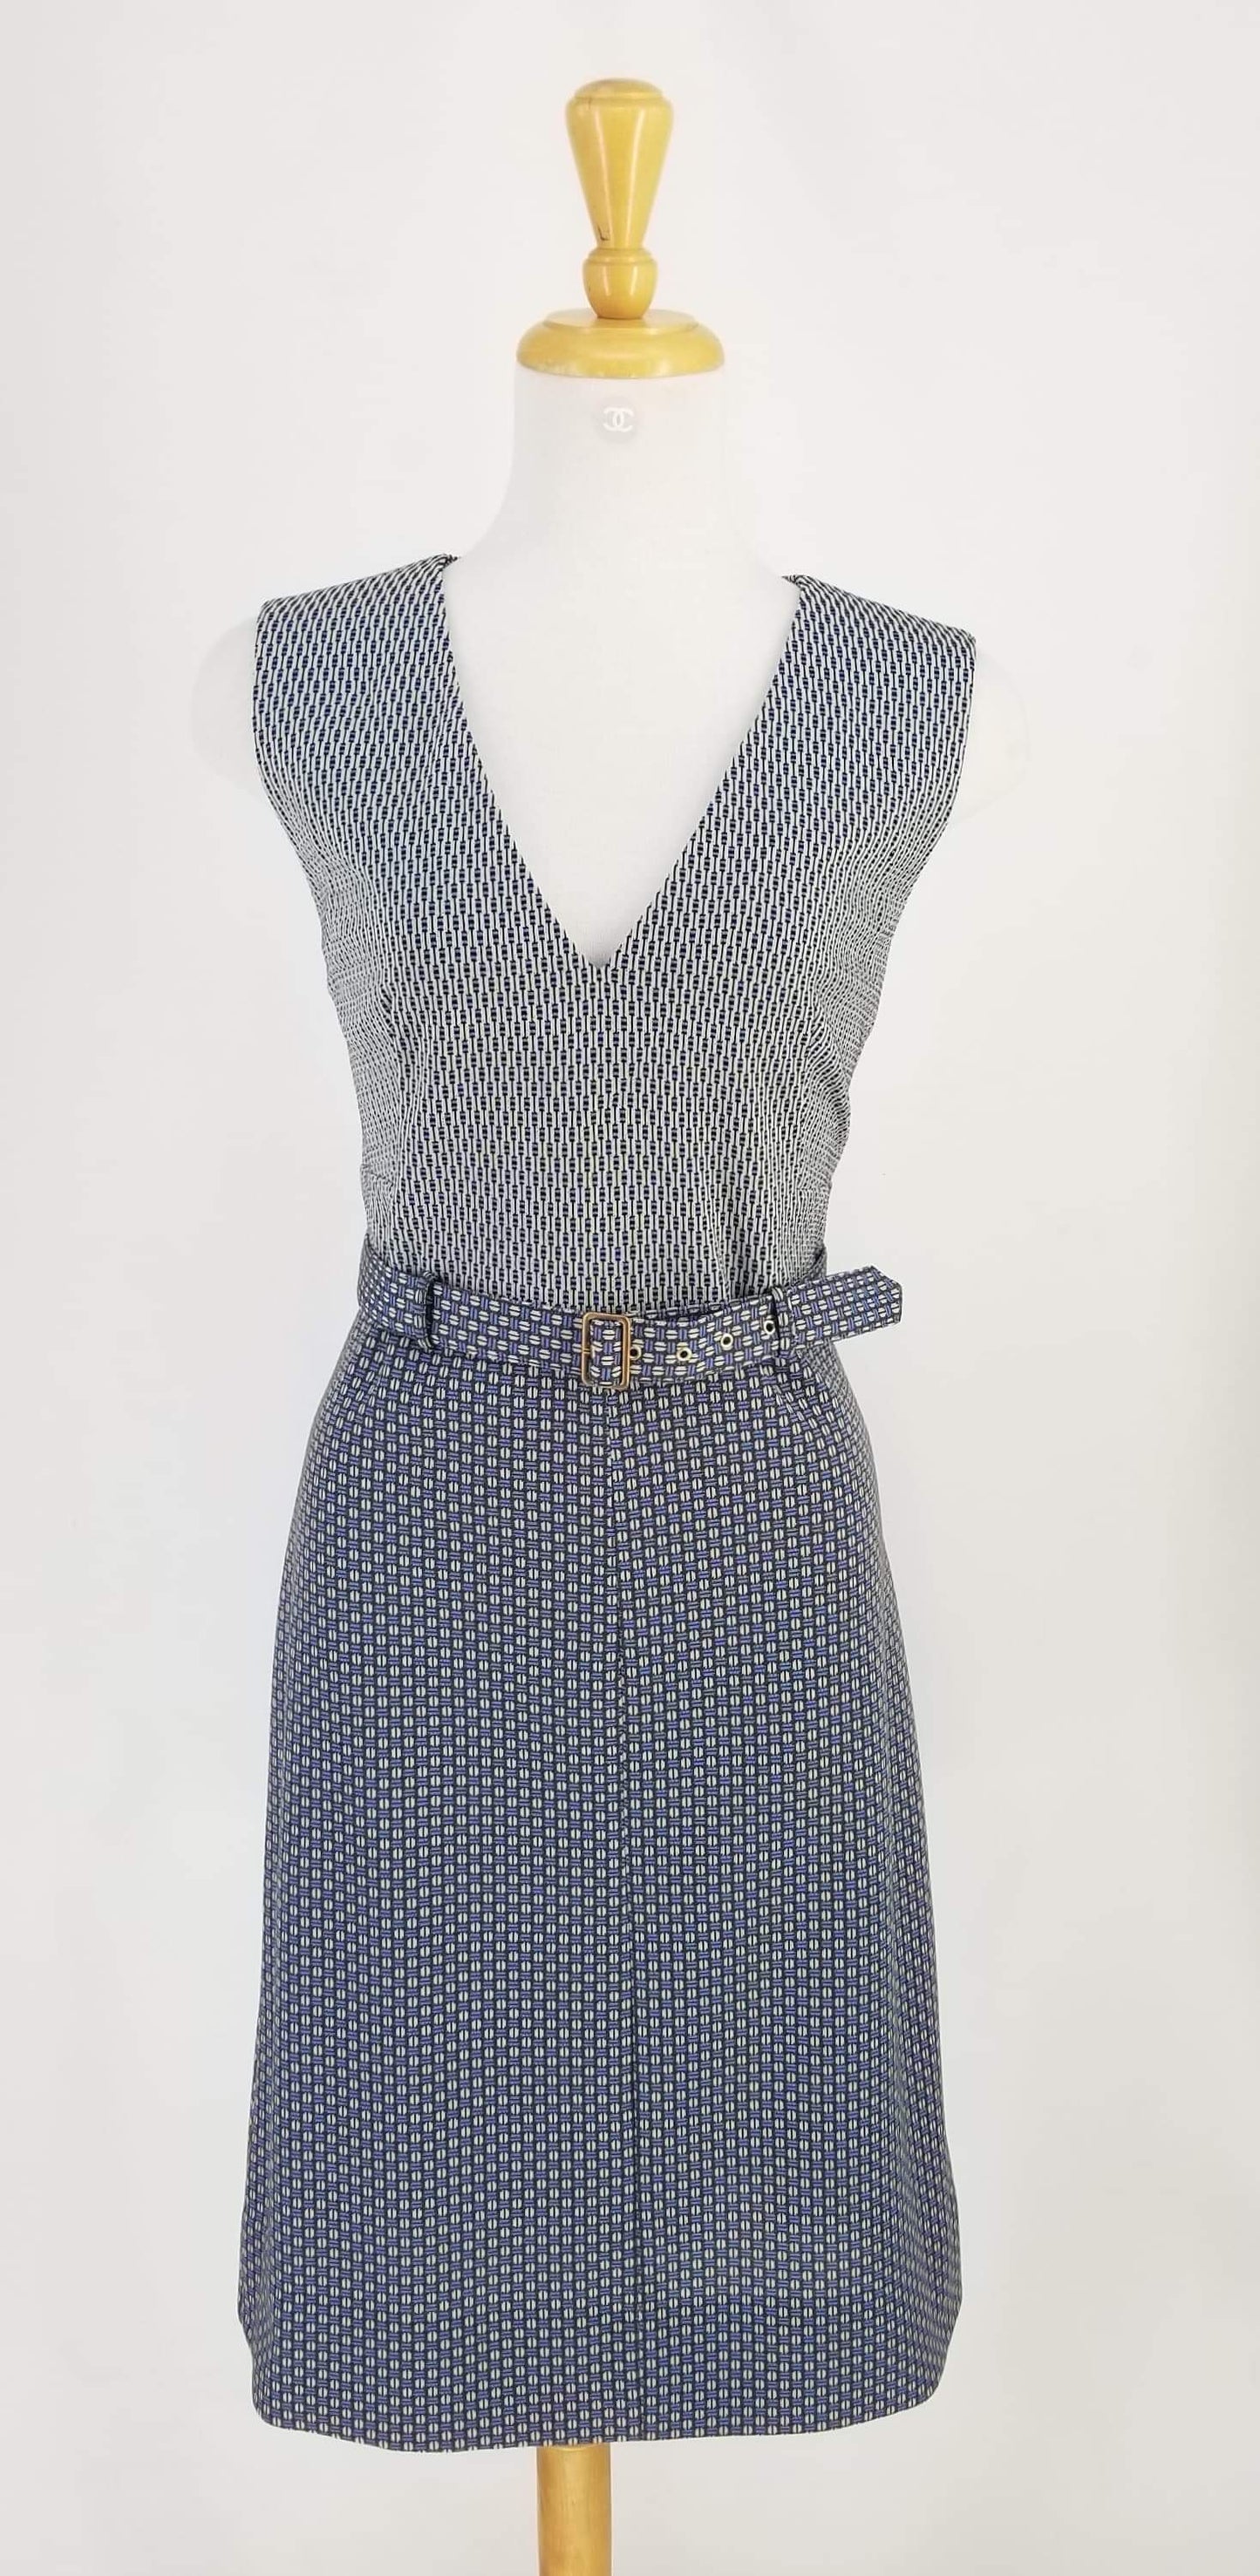 Authentic Diane Von Furstenberg Cream, Brown, Blue, Black Patterned Dress Sz 14